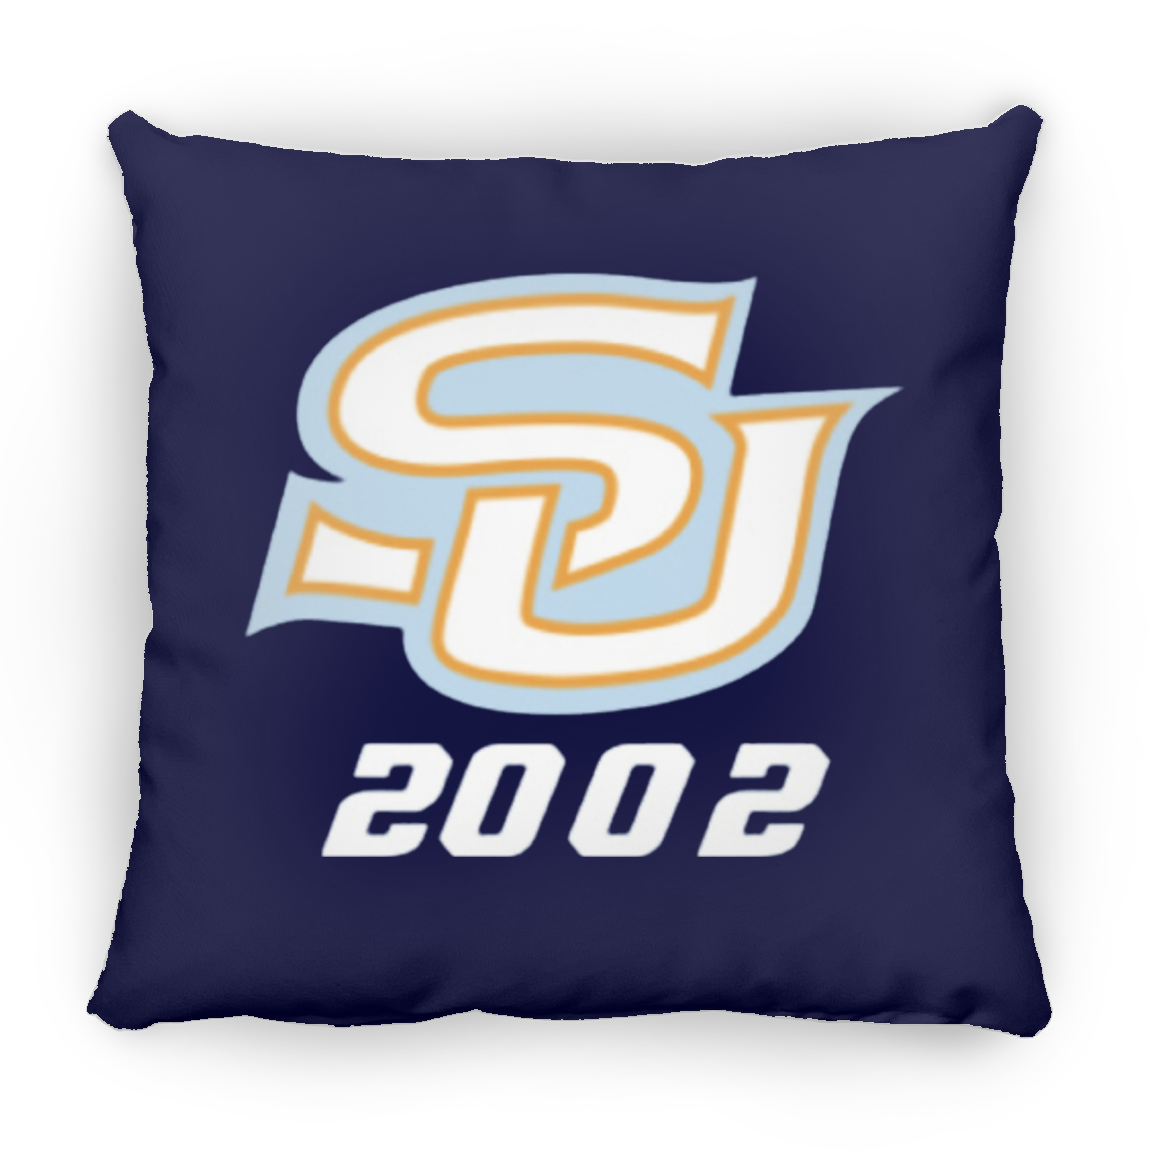 SU 2002 ZP14 Small Square Pillow